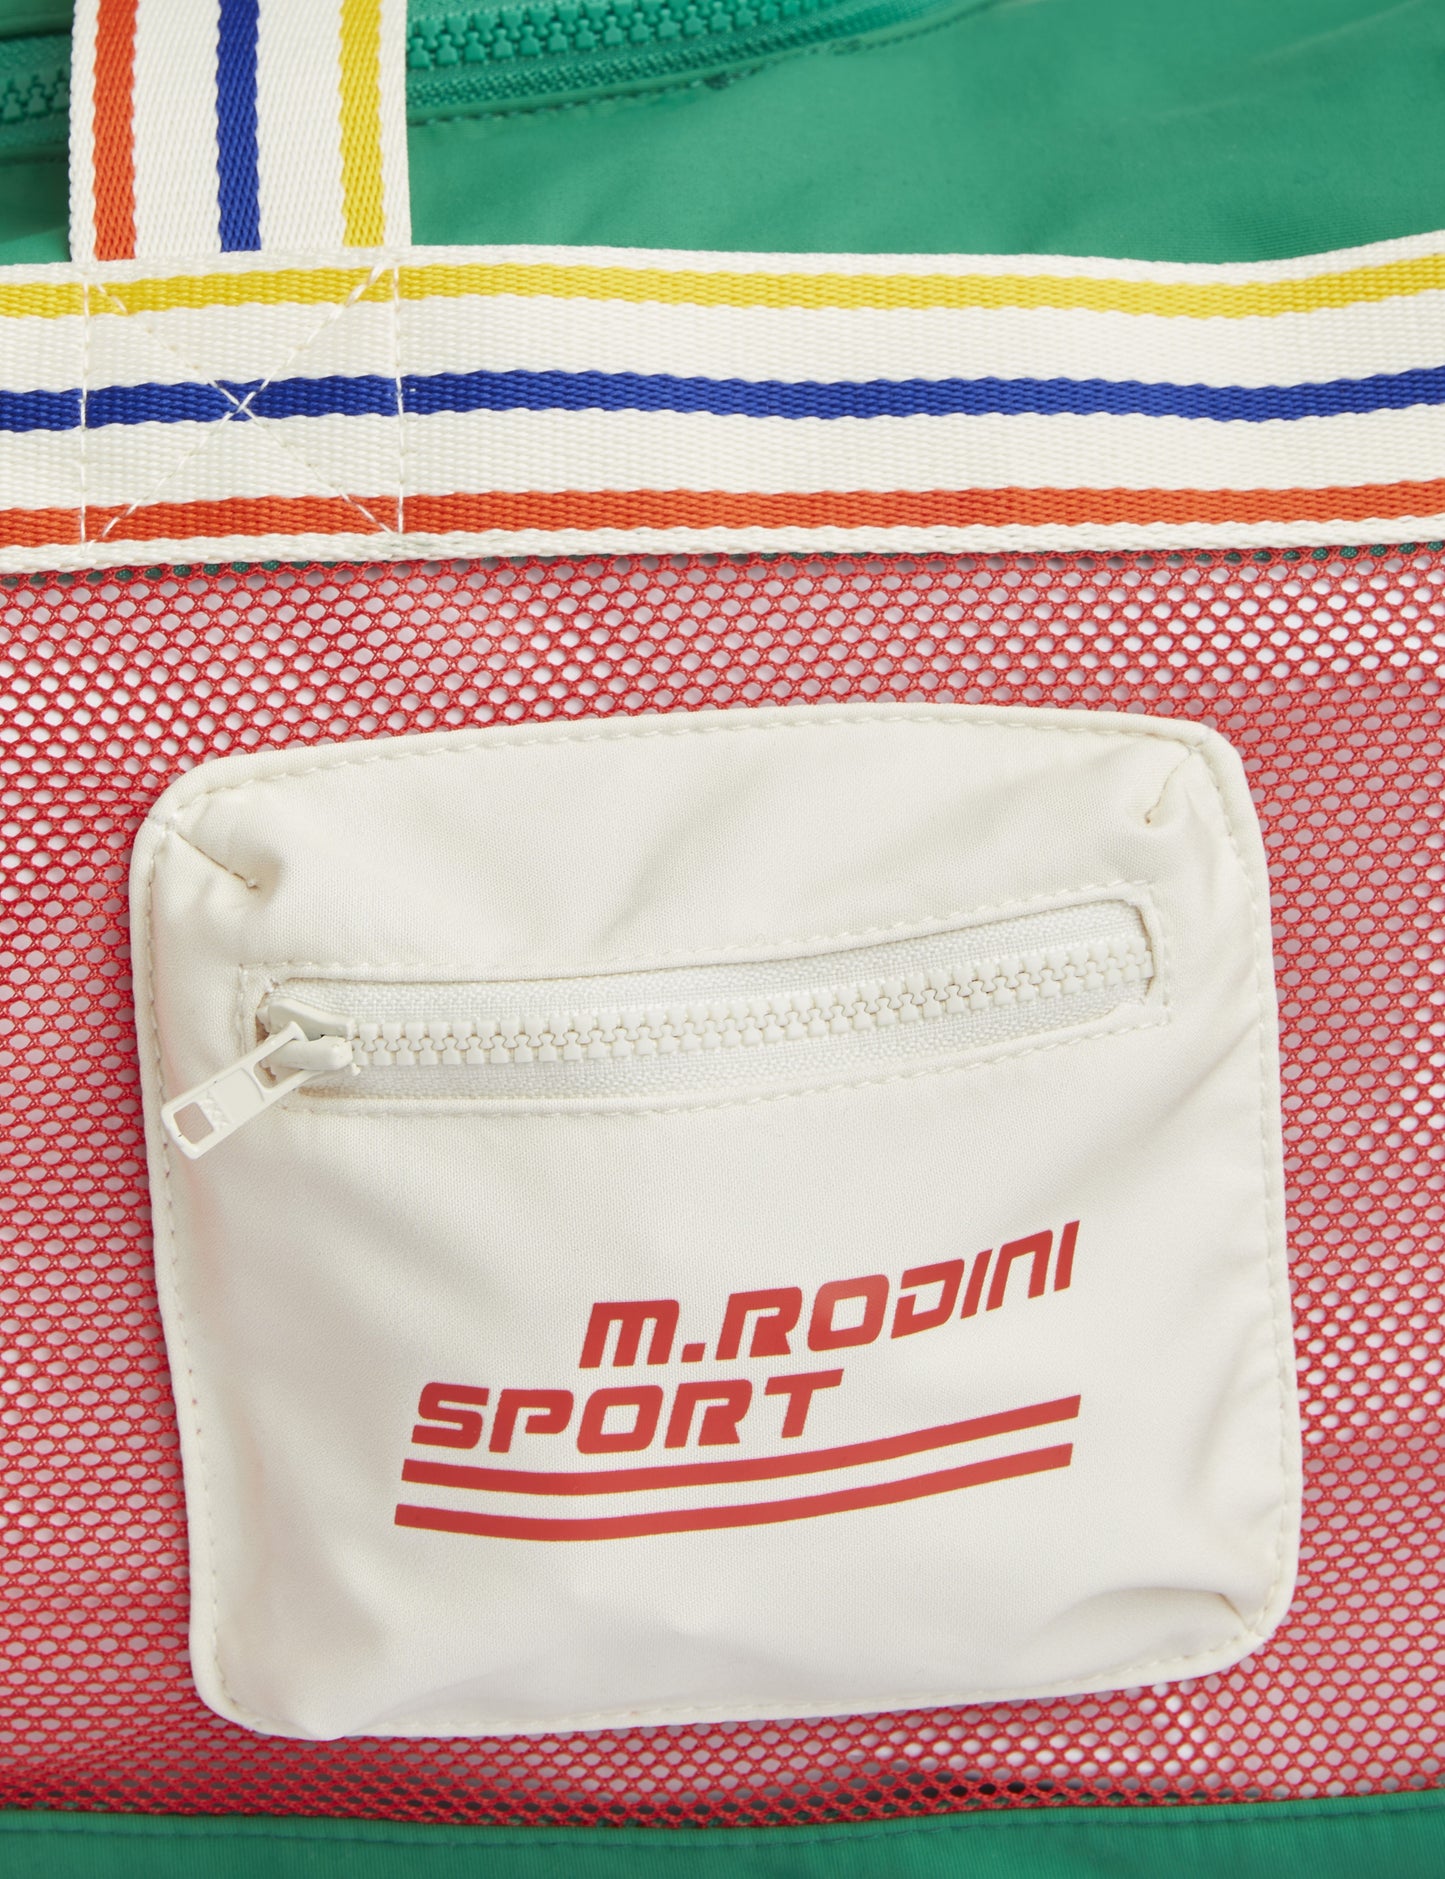 Mini Rodini SP Sport Bag